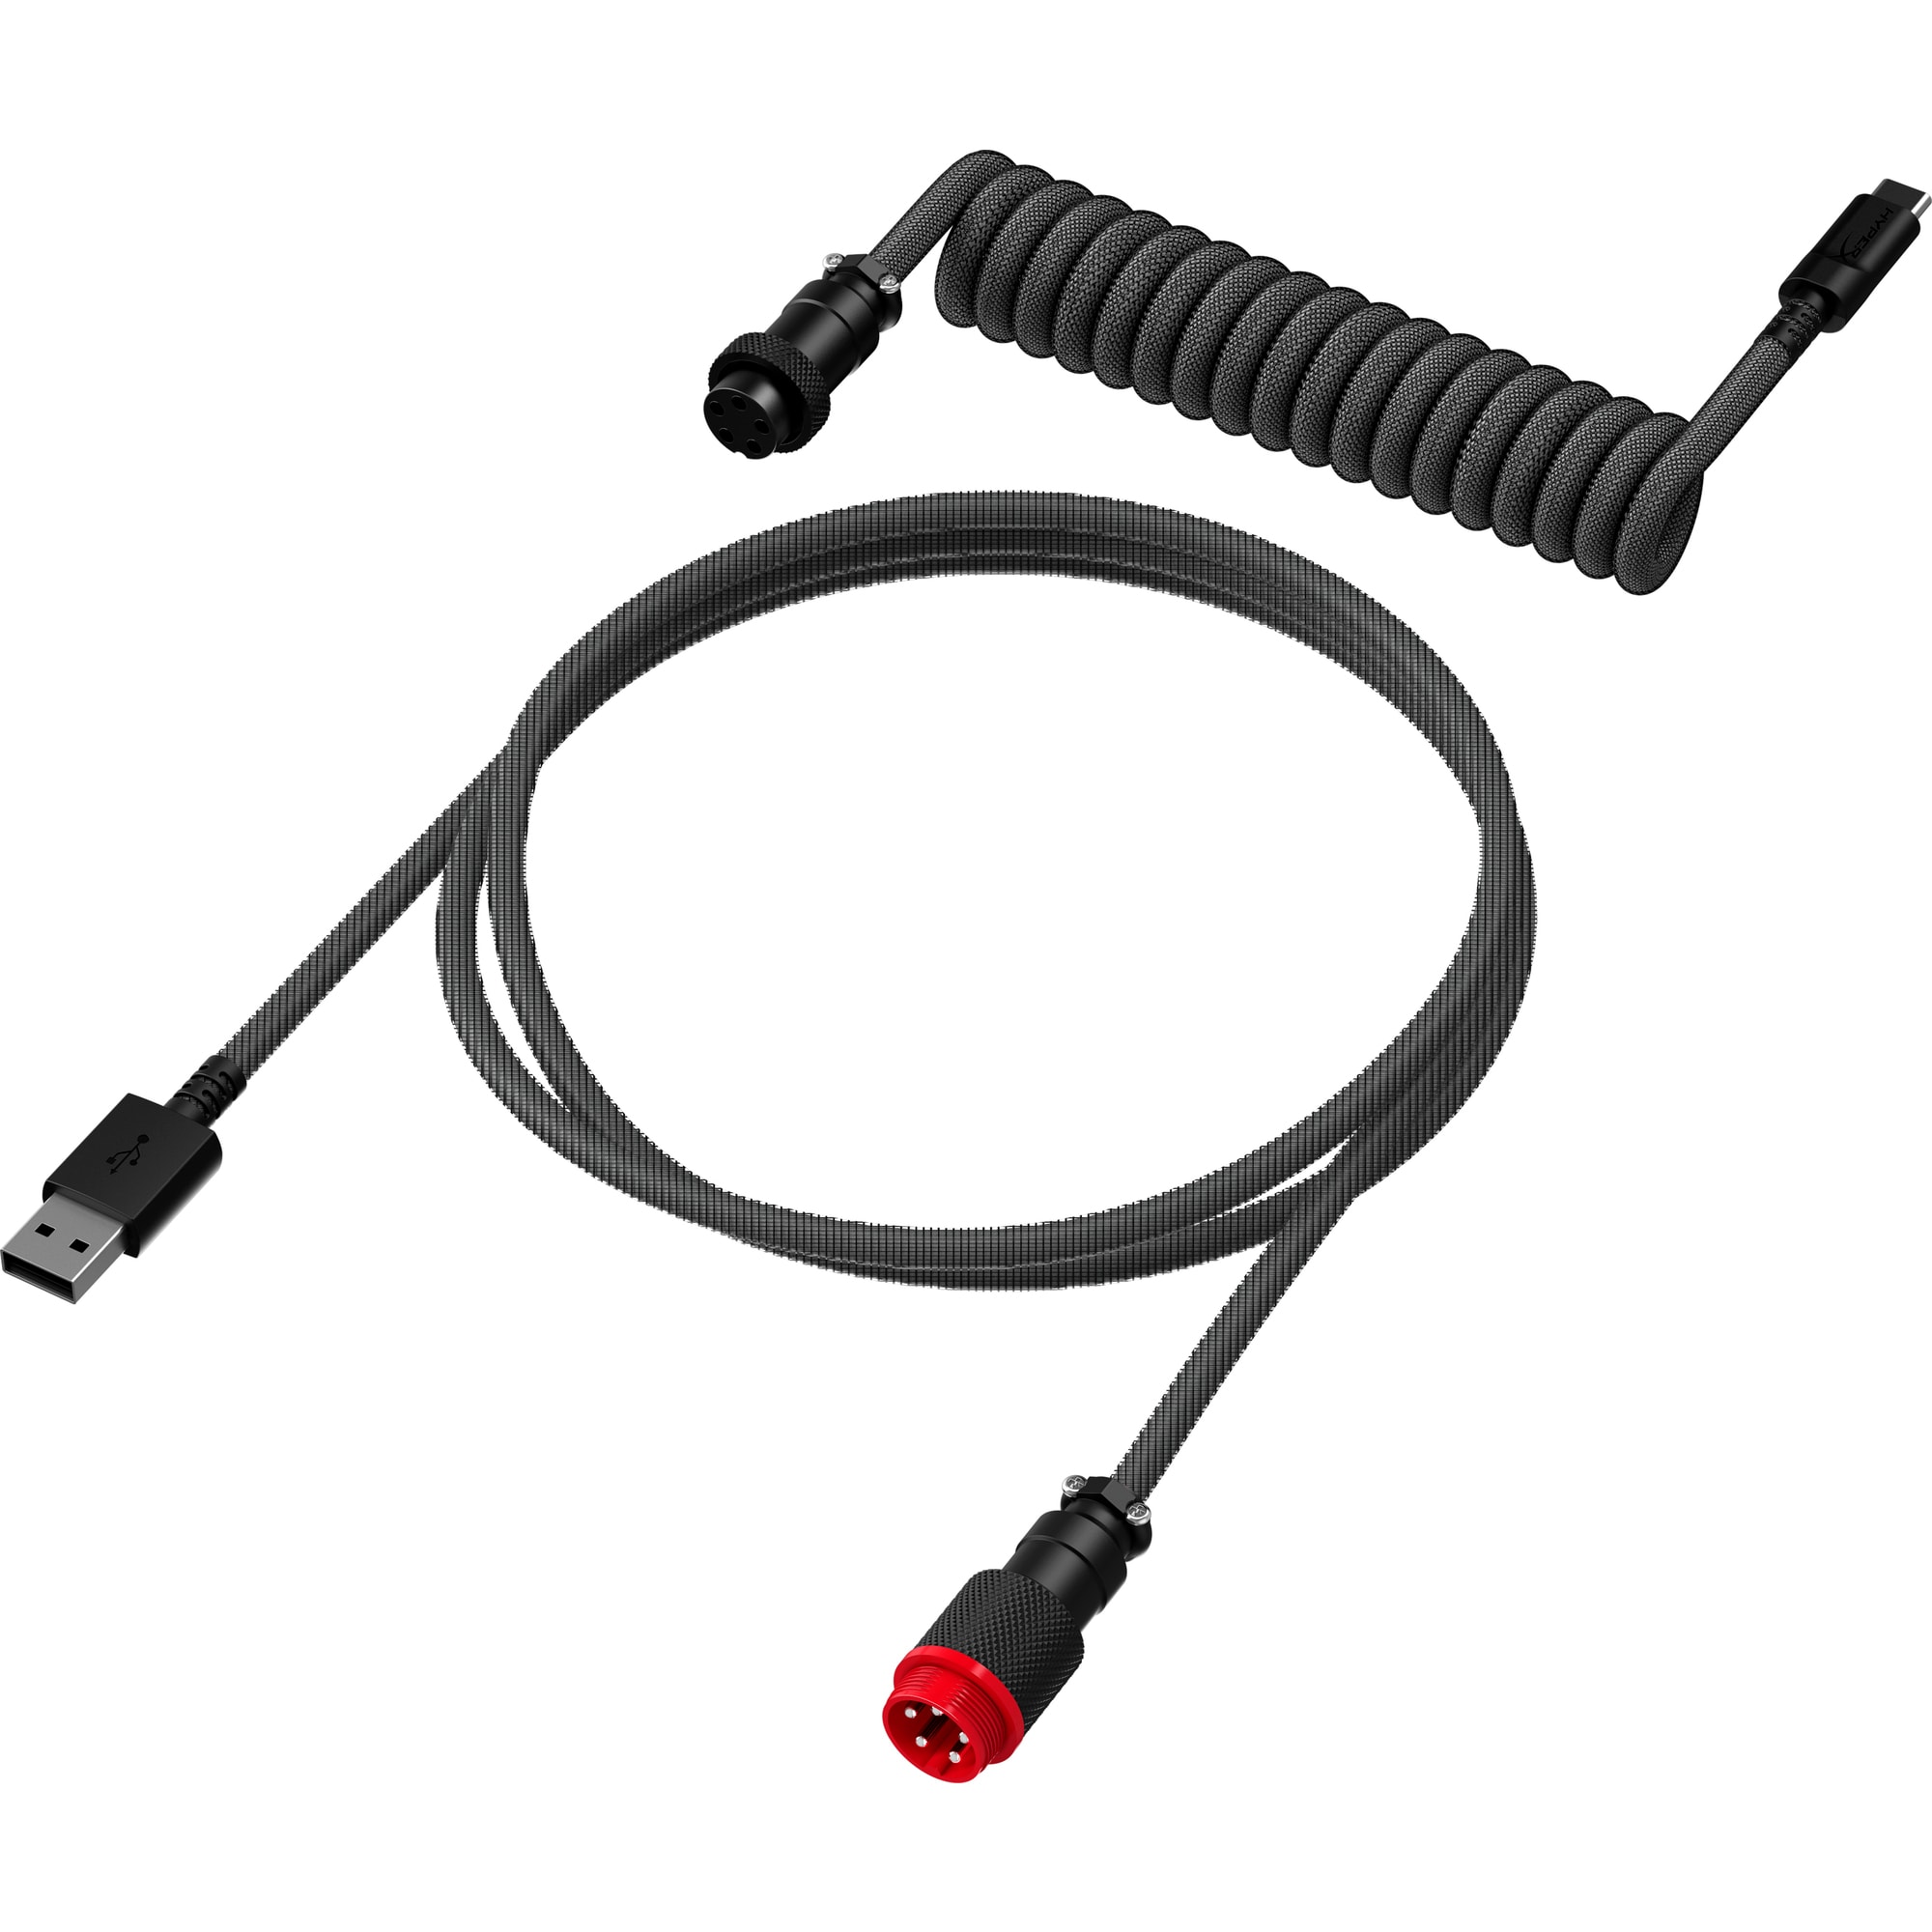 HyperX USB-C Coiled Cable Gray-Black - Příslušenství ke klávesnici2 